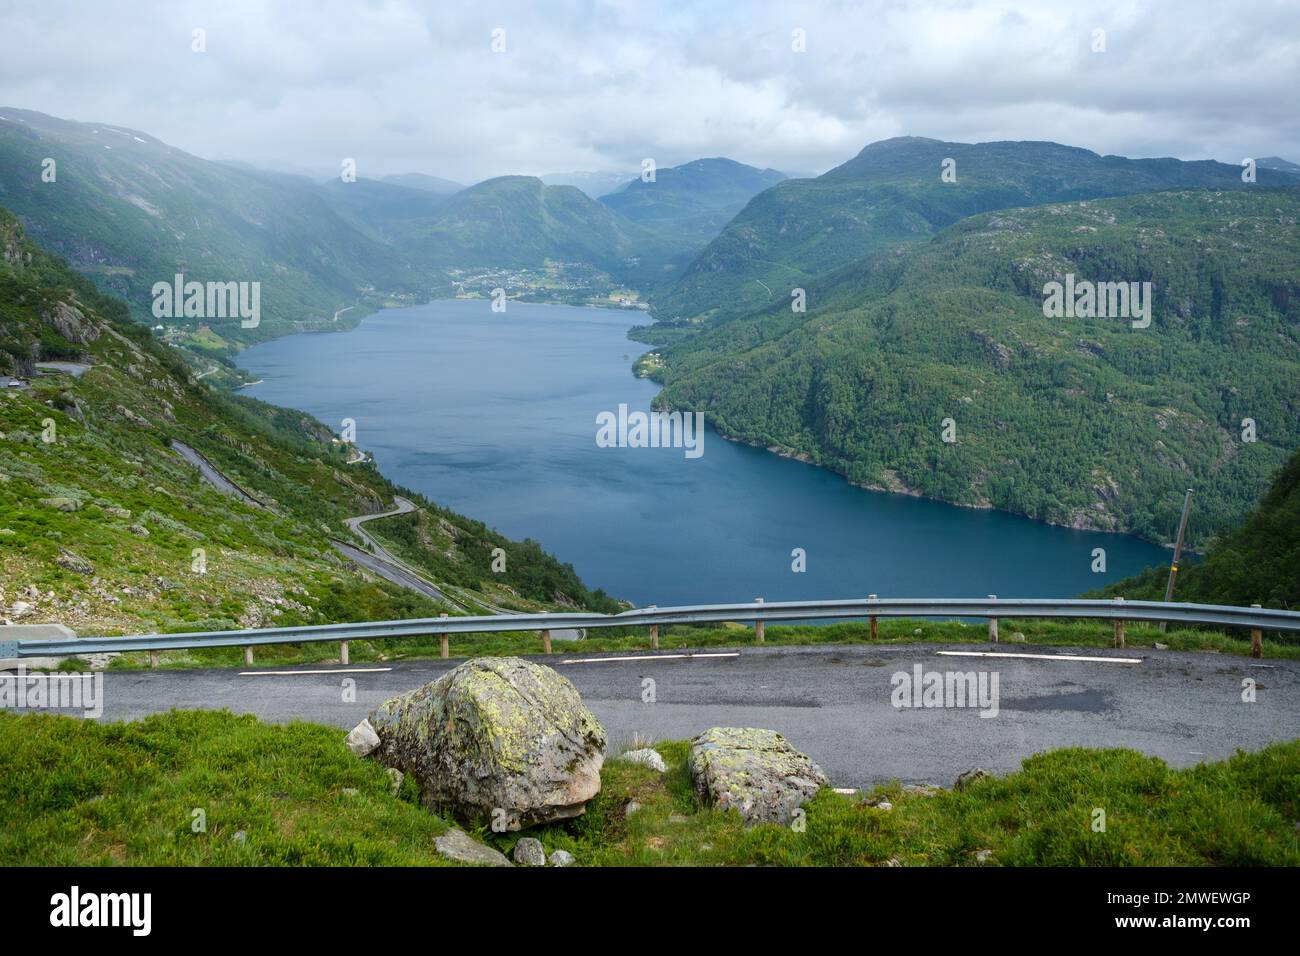 Una vista aerea del bellissimo fiordo vicino alle verdi montagne di Roldal, Norvegia Foto Stock